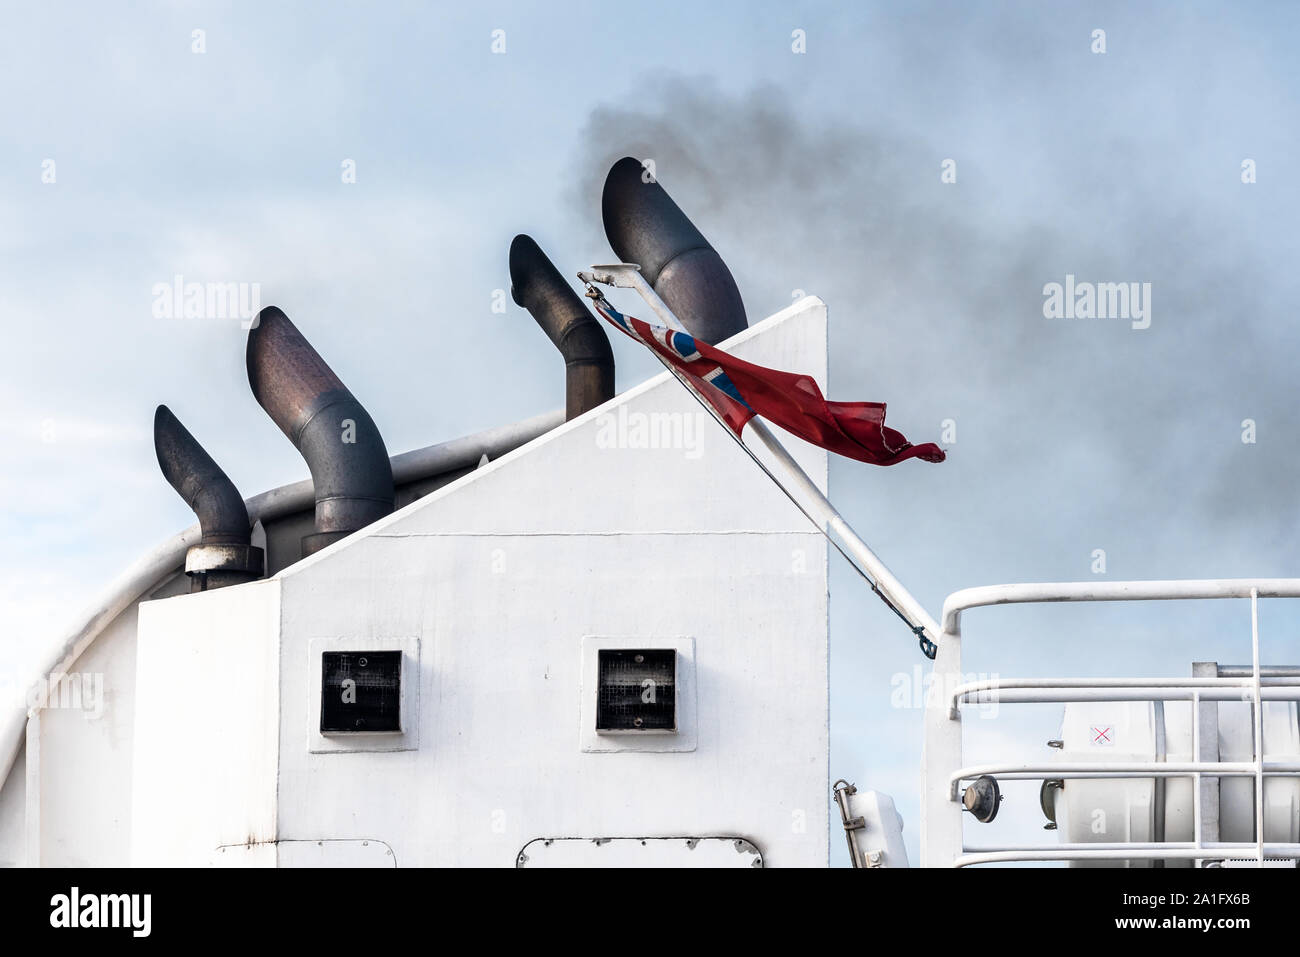 Les tuyaux d'échappement d'un ferry avec fumée noire qui sort. Concept de la pollution. Banque D'Images